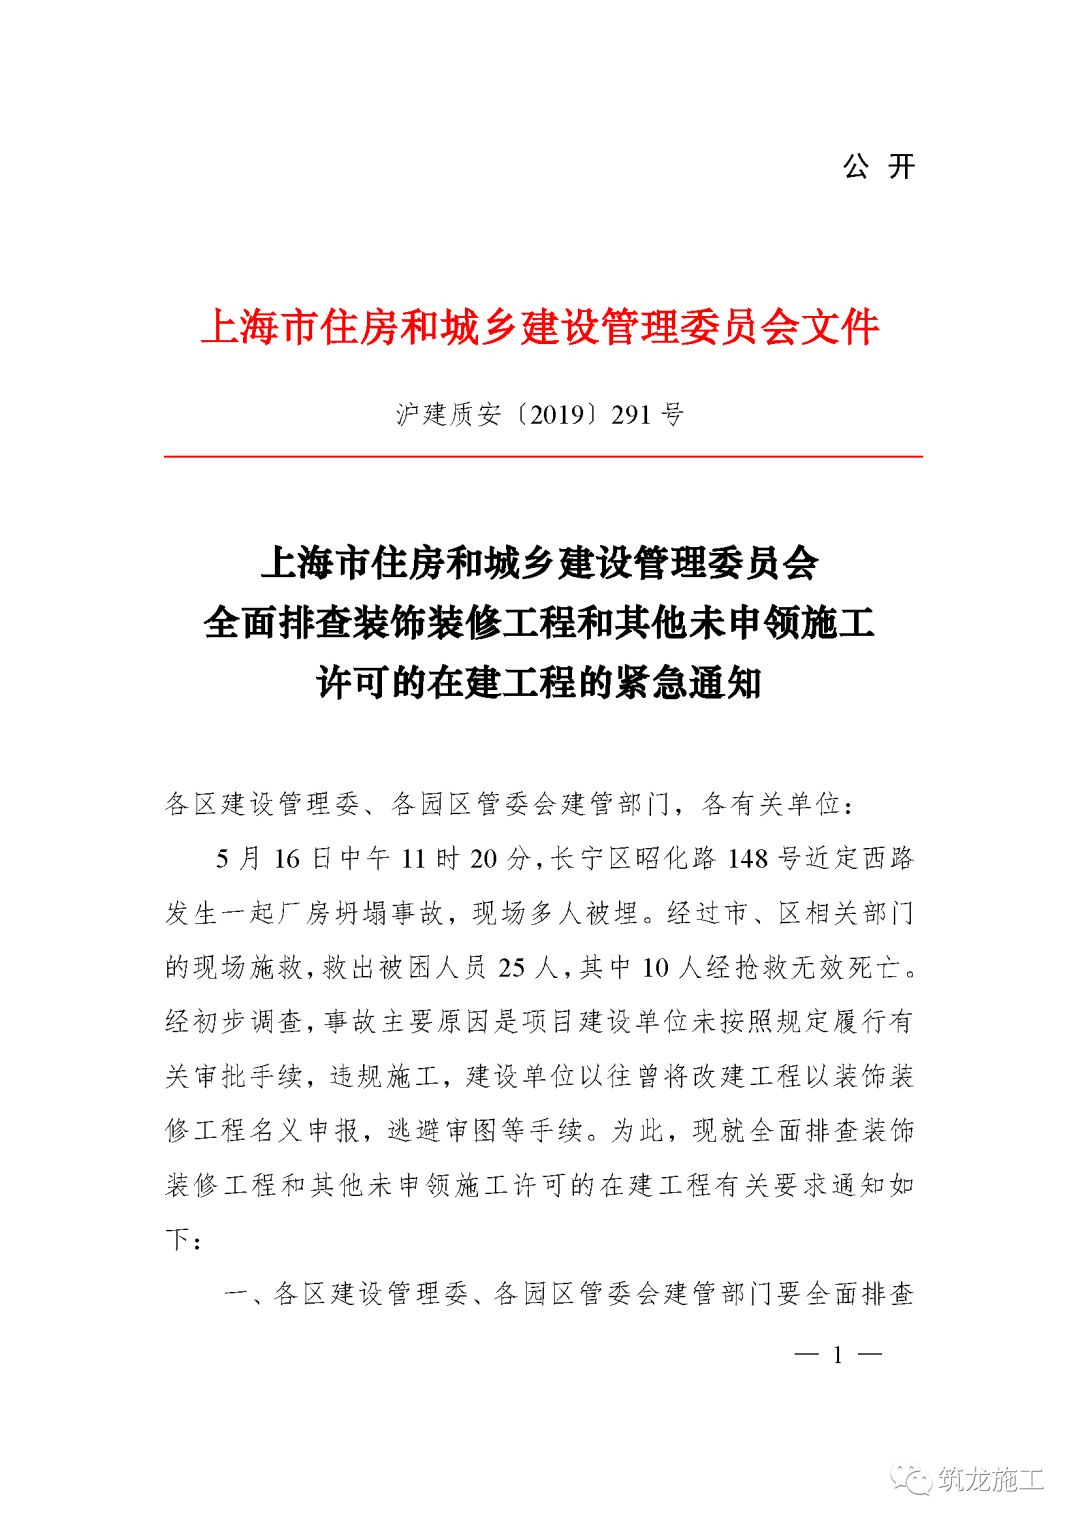 上海厂房坍塌事故，建设单位未按照规定履行有关审批手续，违规施工